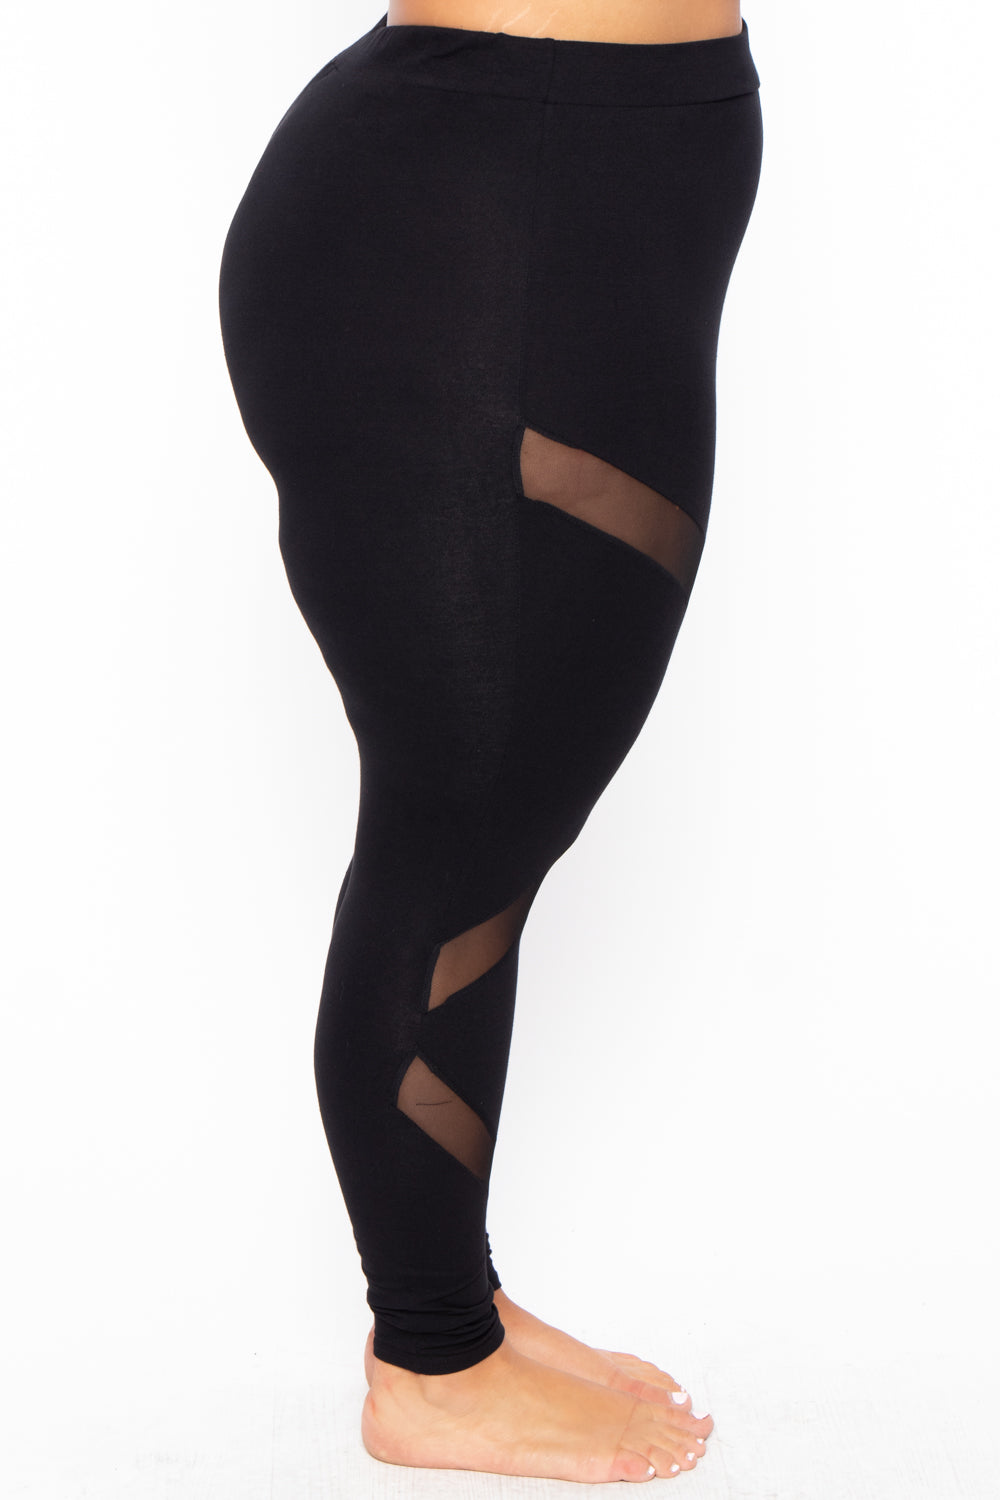 Women's Plus Size Snake Print Leggings - Black - Curvy Sense